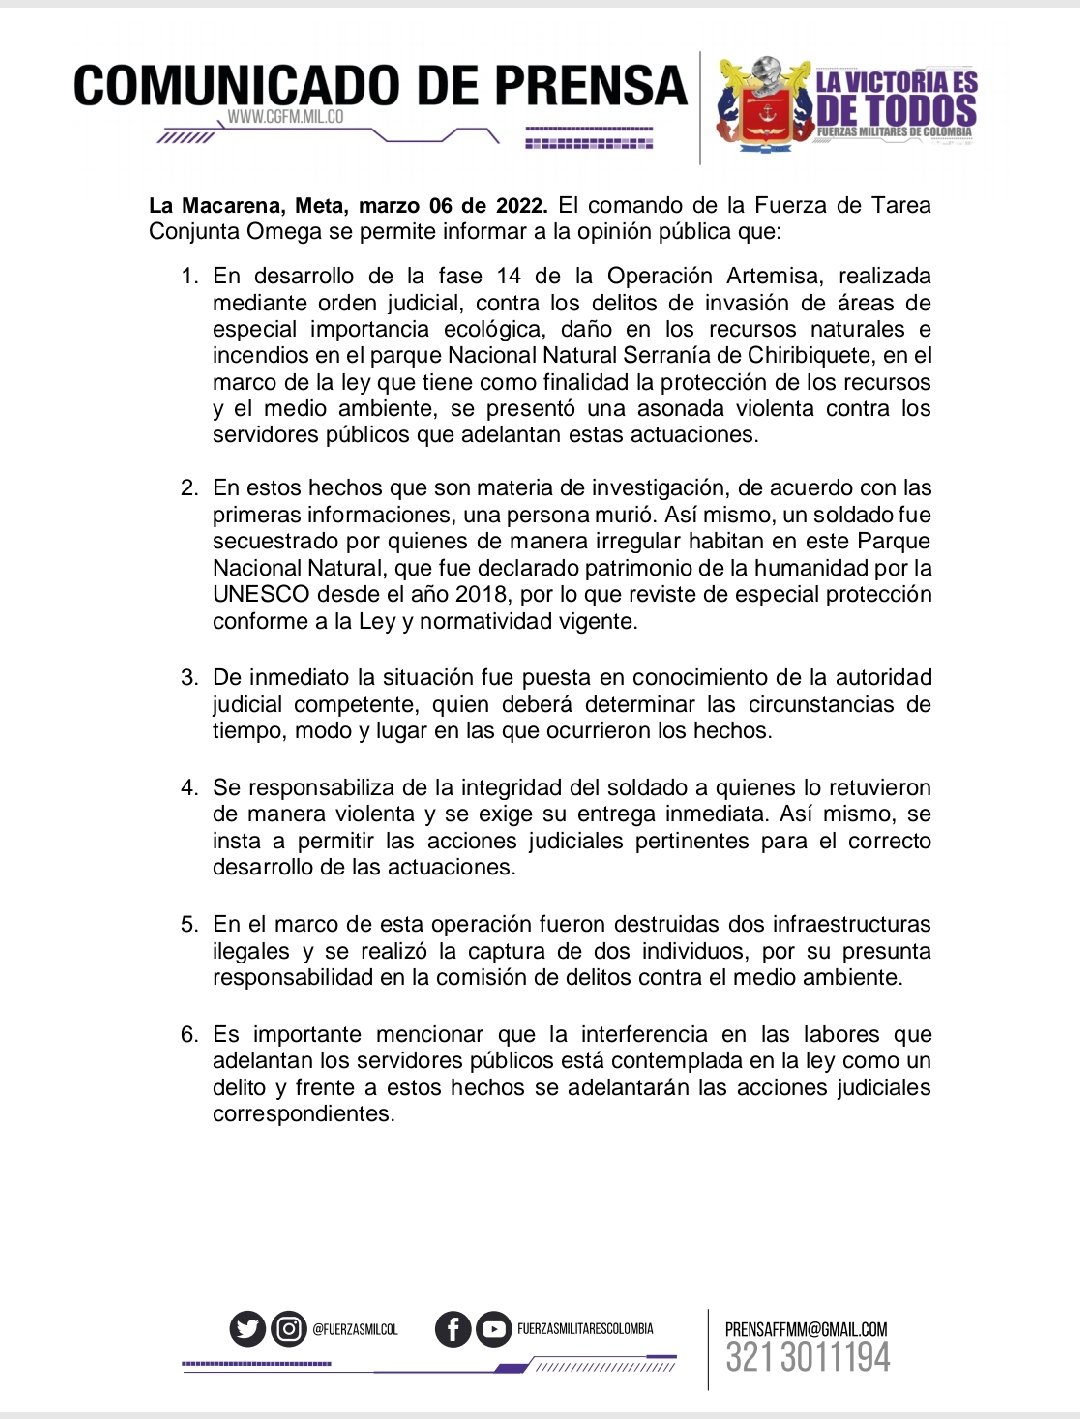 Fuerza de Tarea Conjunta Omega informó los hechos registrados en el Parque Nacional Chiribiquete.